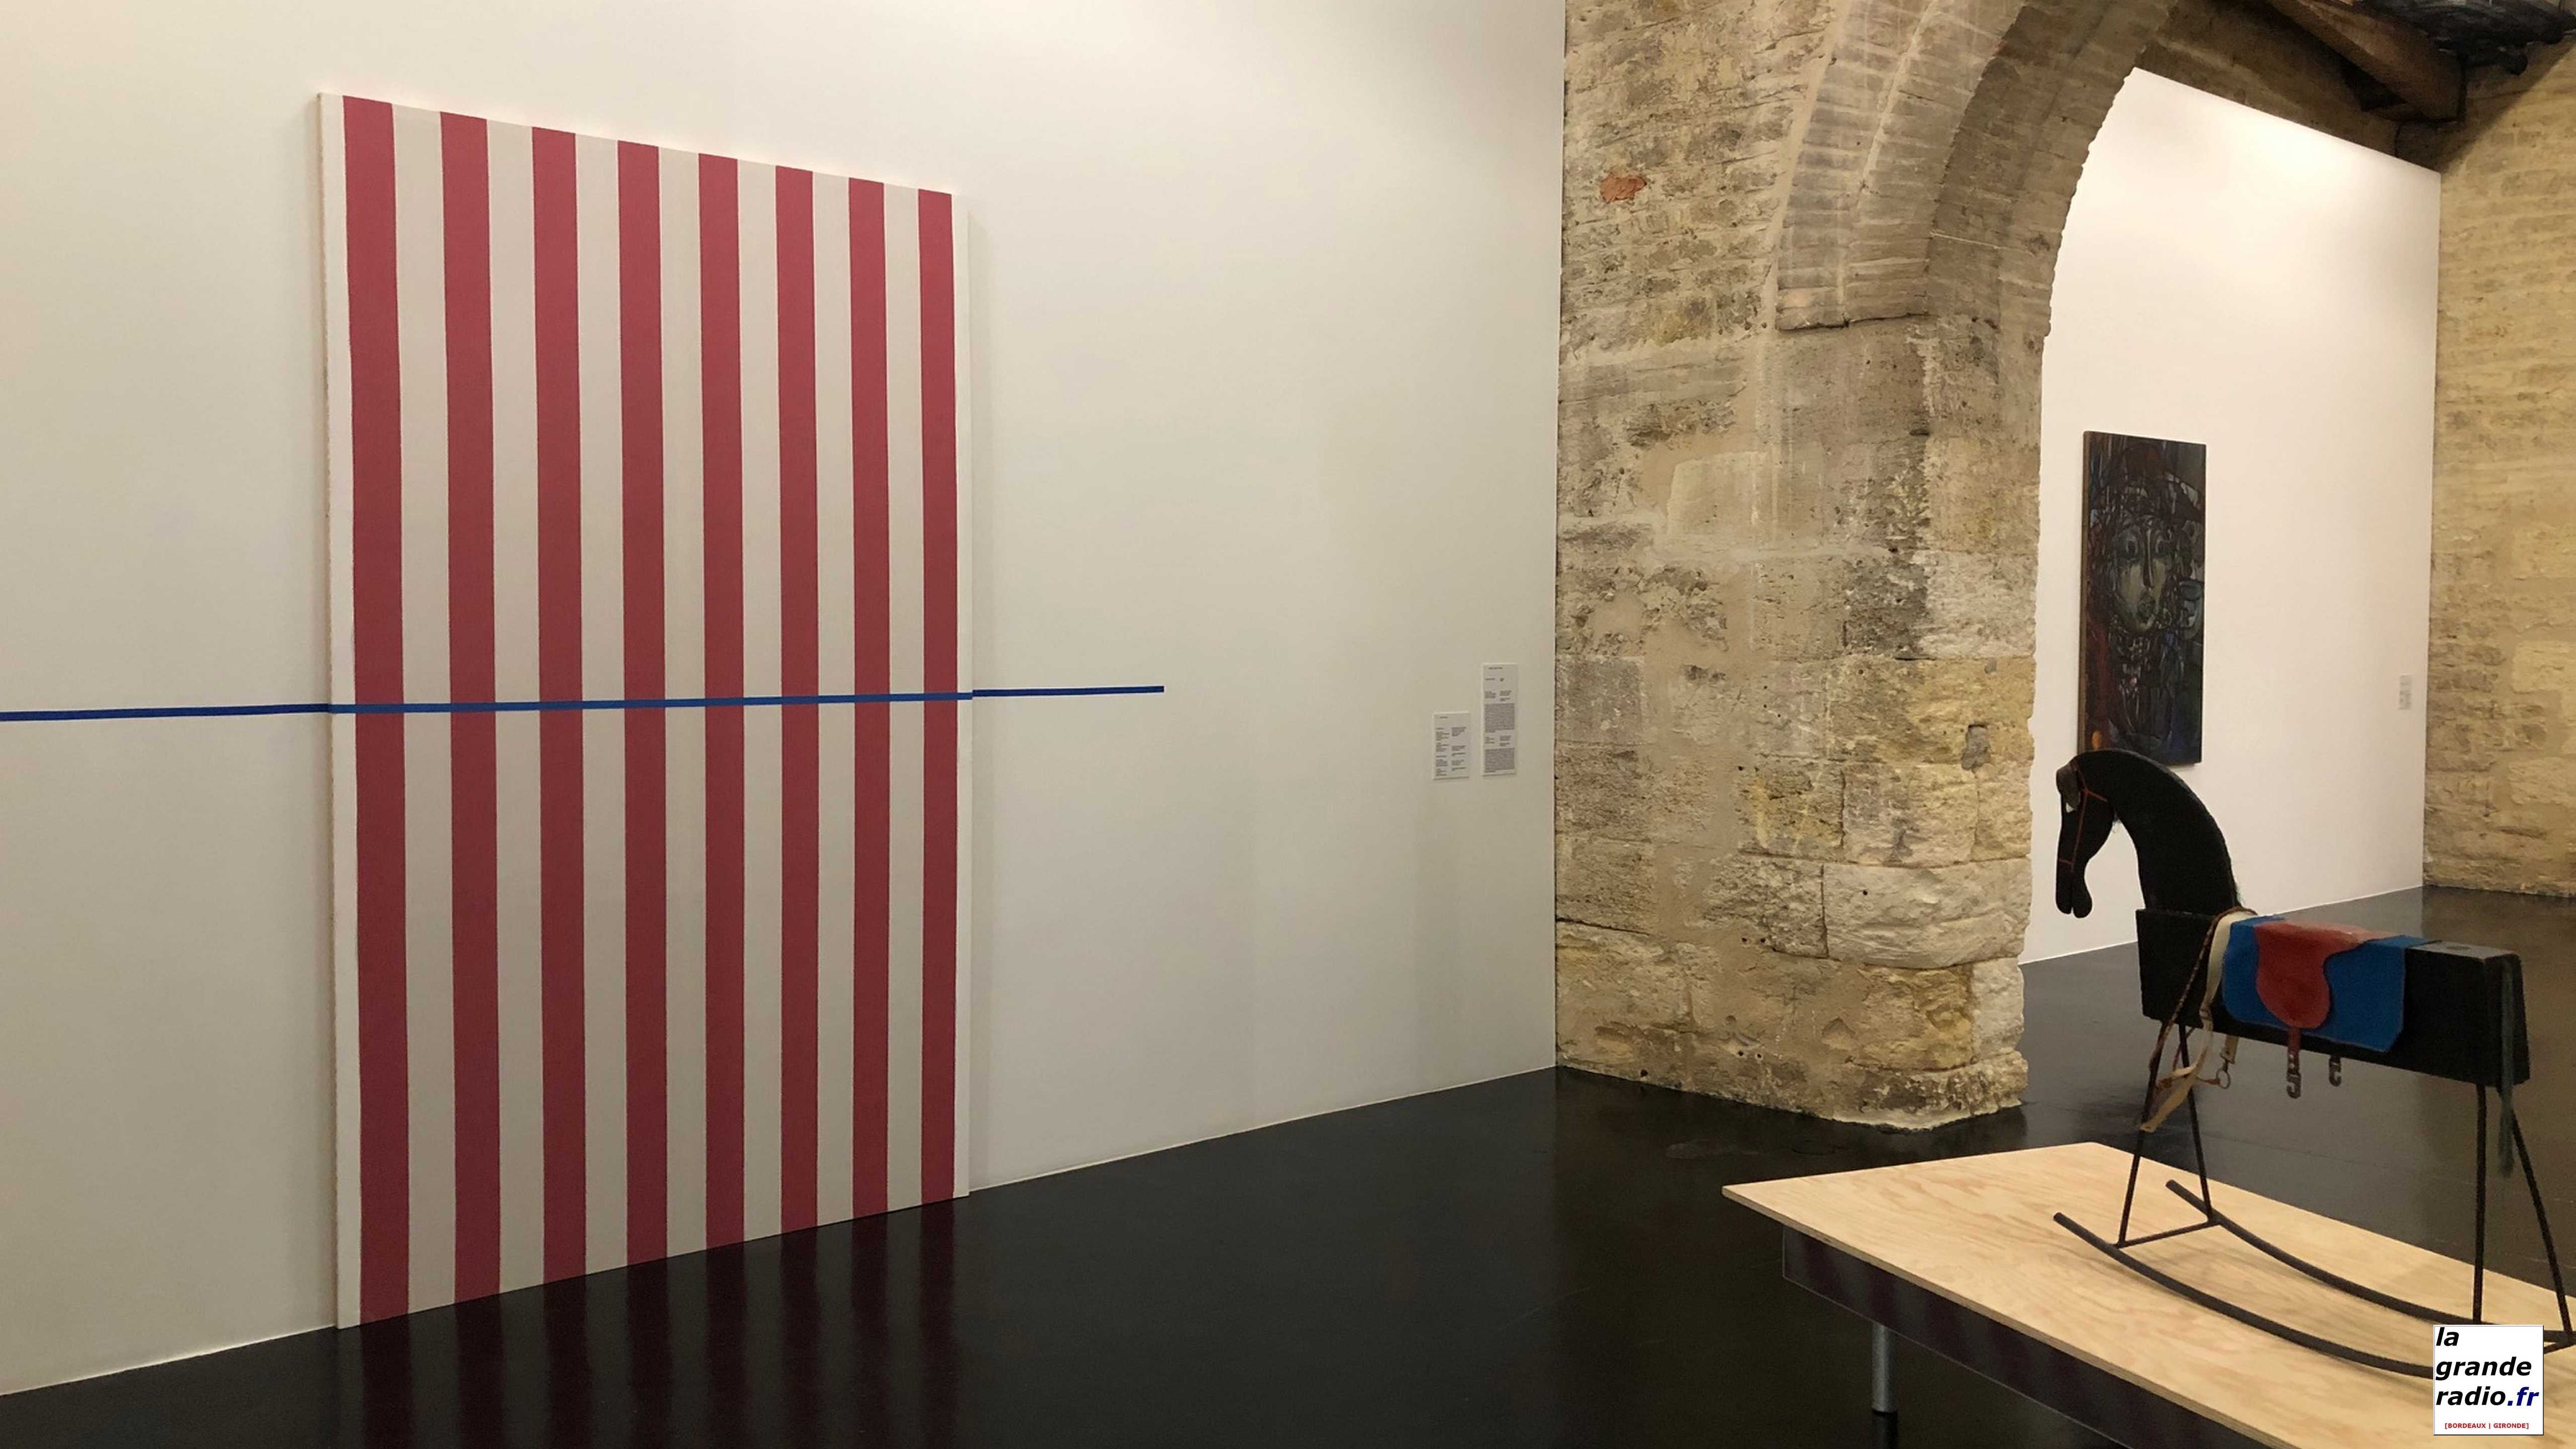 Bordeaux : "Anka au cas par cas", exposition au Capc Musée d’art contemporain